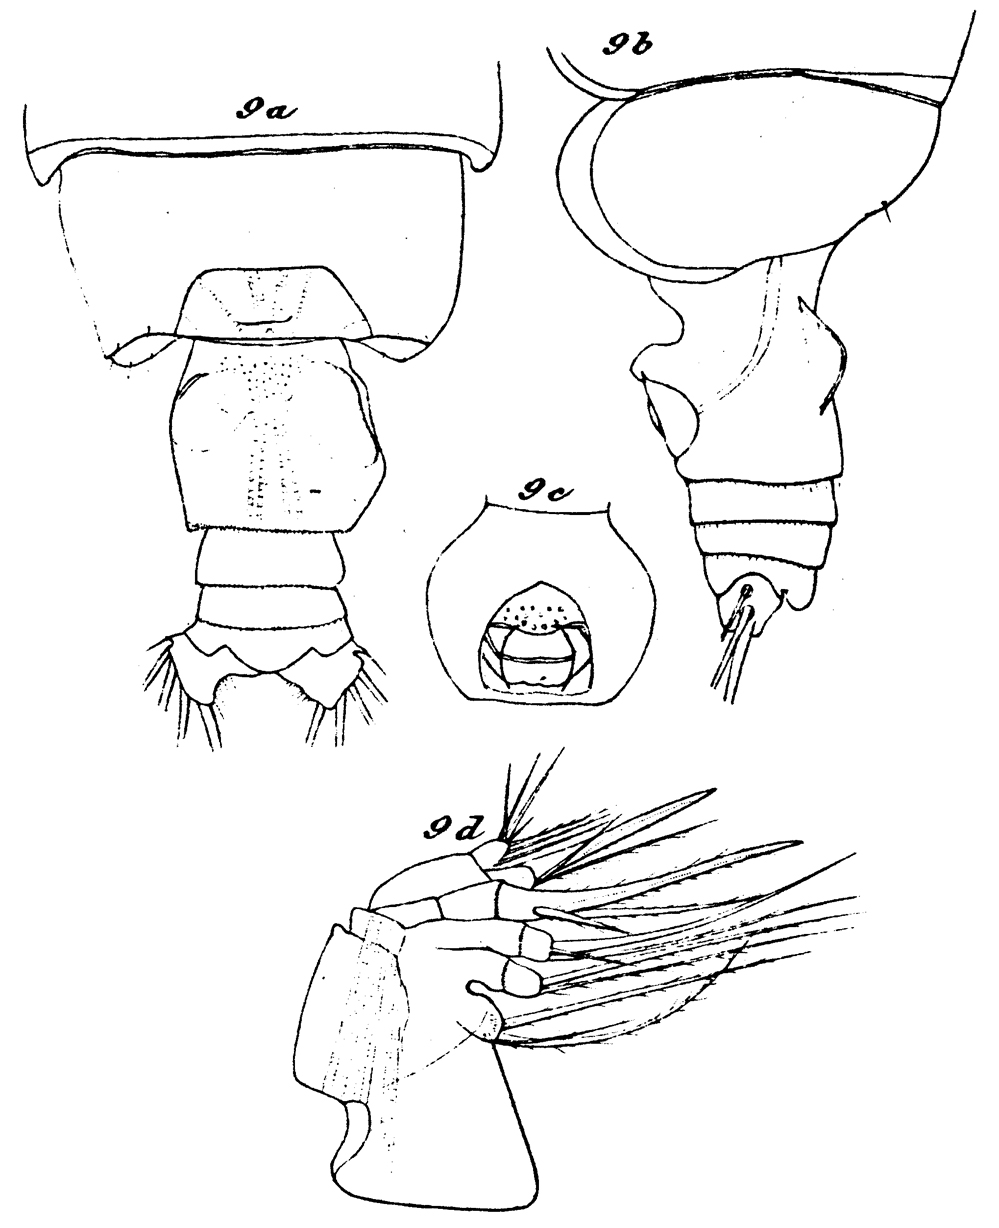 Espèce Euchirella bitumida - Planche 11 de figures morphologiques